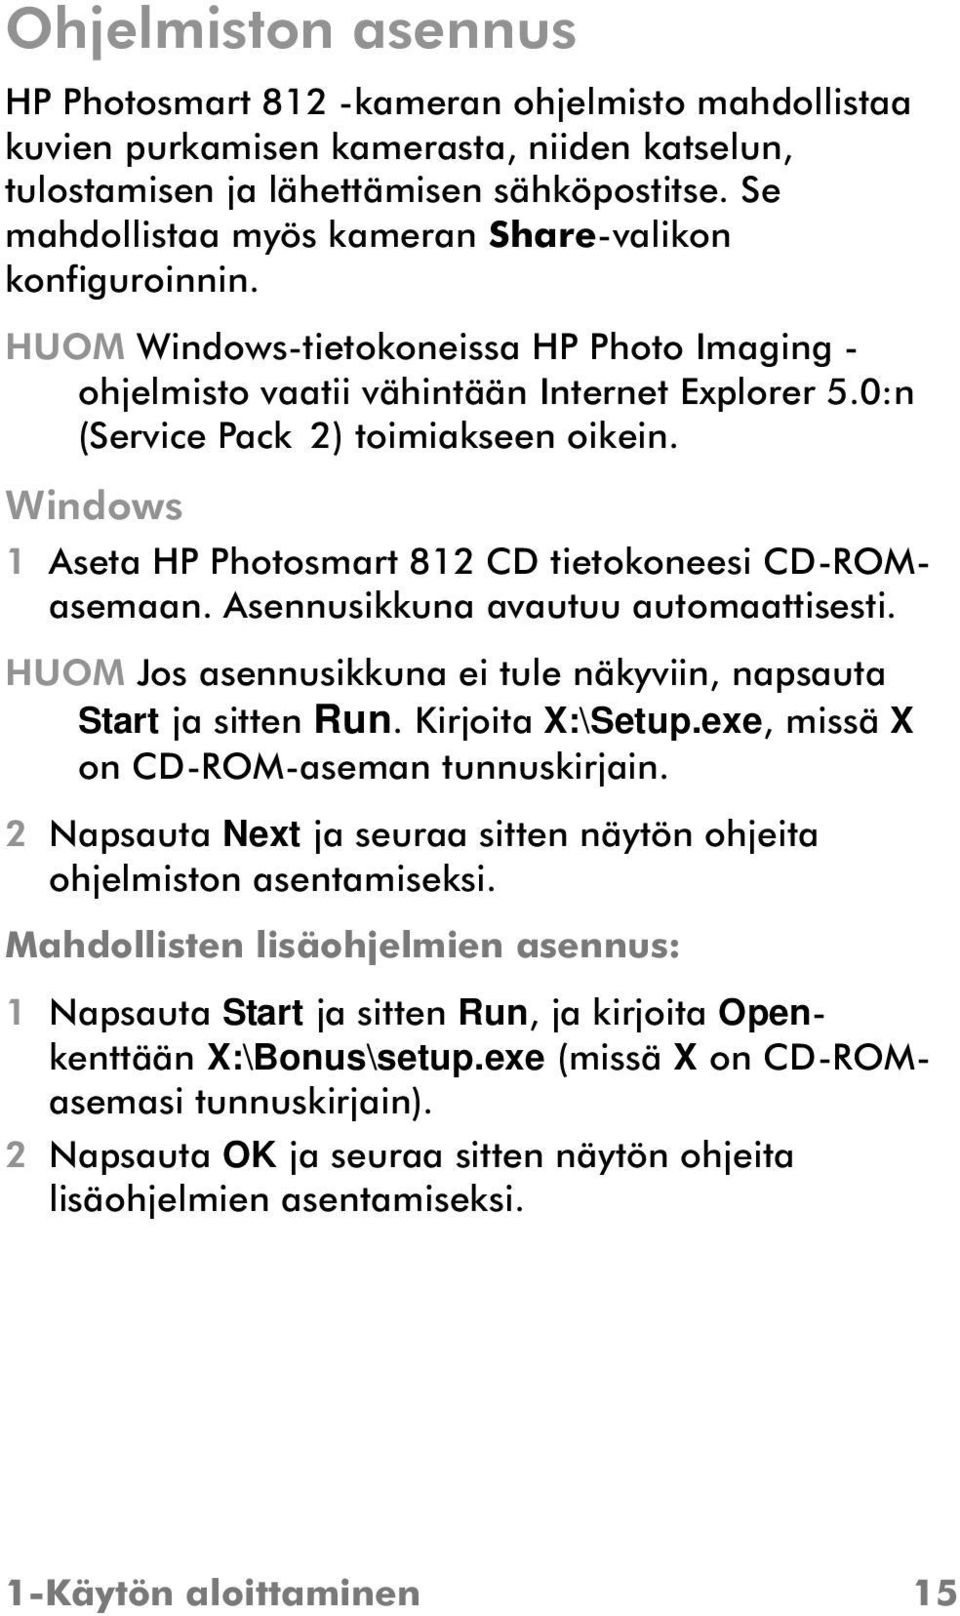 Windows 1 Aseta HP Photosmart 812 CD tietokoneesi CD-ROMasemaan. Asennusikkuna avautuu automaattisesti. HUOM Jos asennusikkuna ei tule näkyviin, napsauta Start ja sitten Run. Kirjoita X:\Setup.